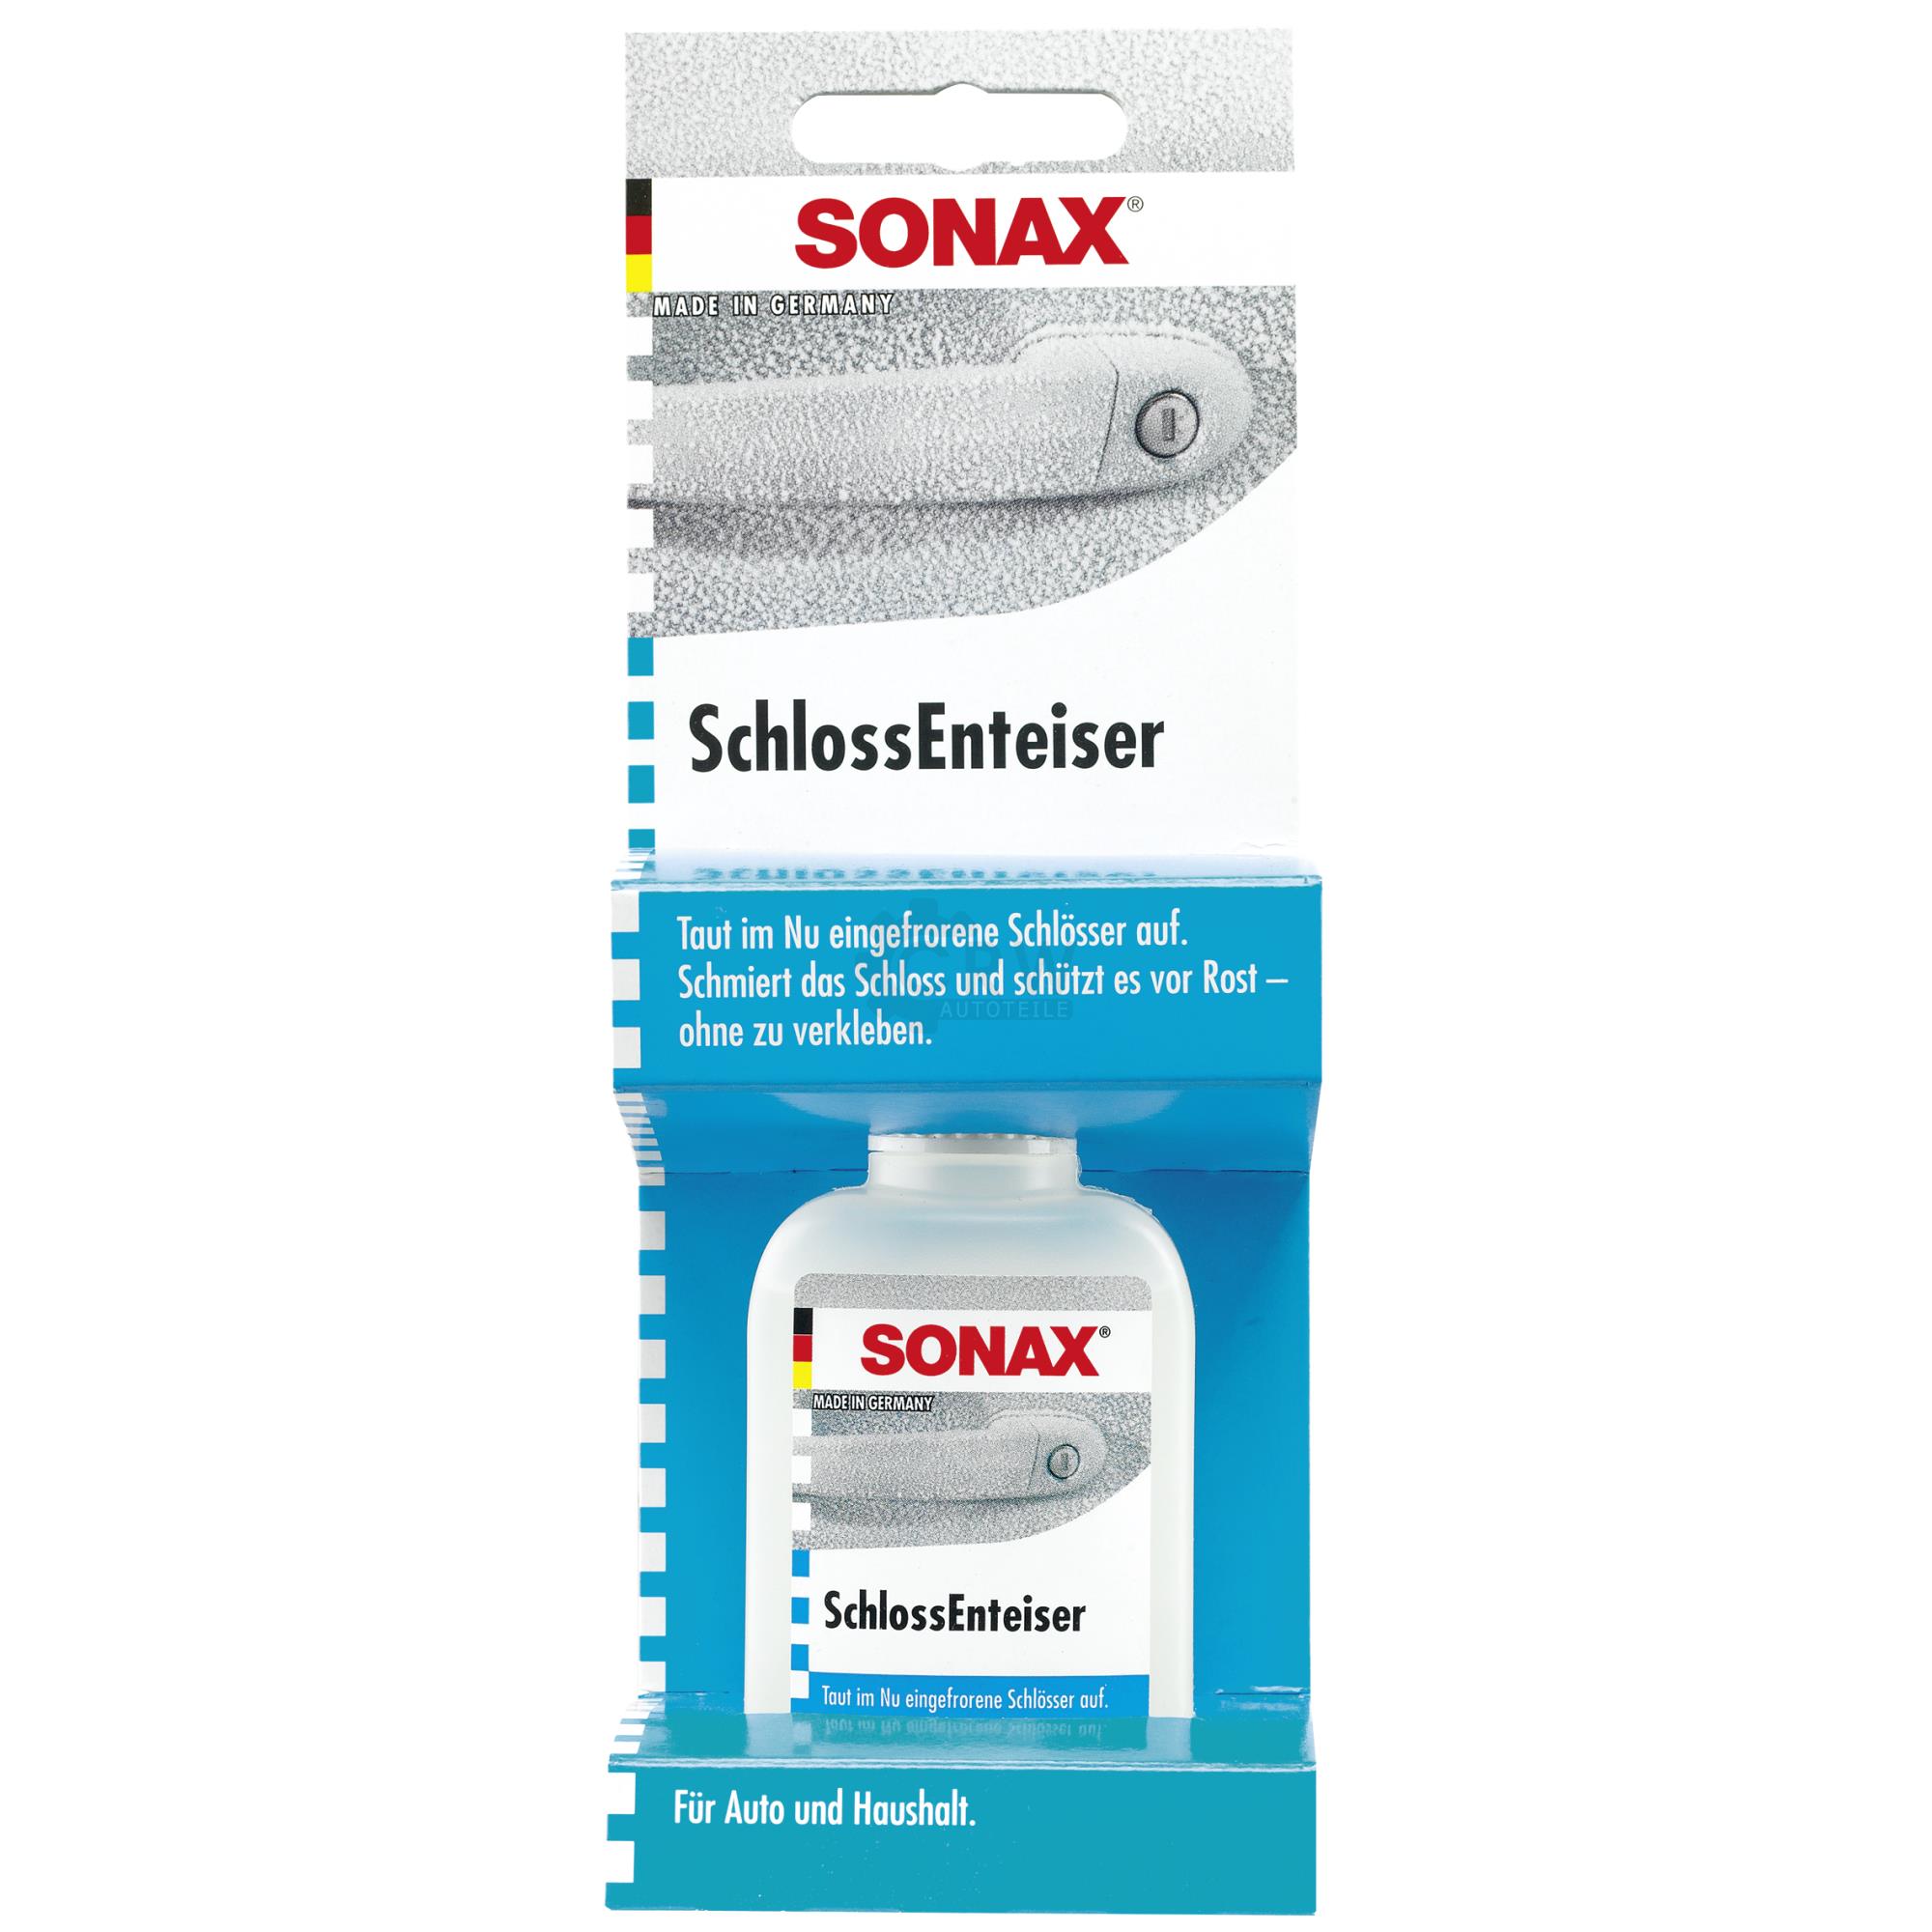 SONAX 03310000 SchlossEnteiser Rostschutz Pflege Schmierung 50 ml